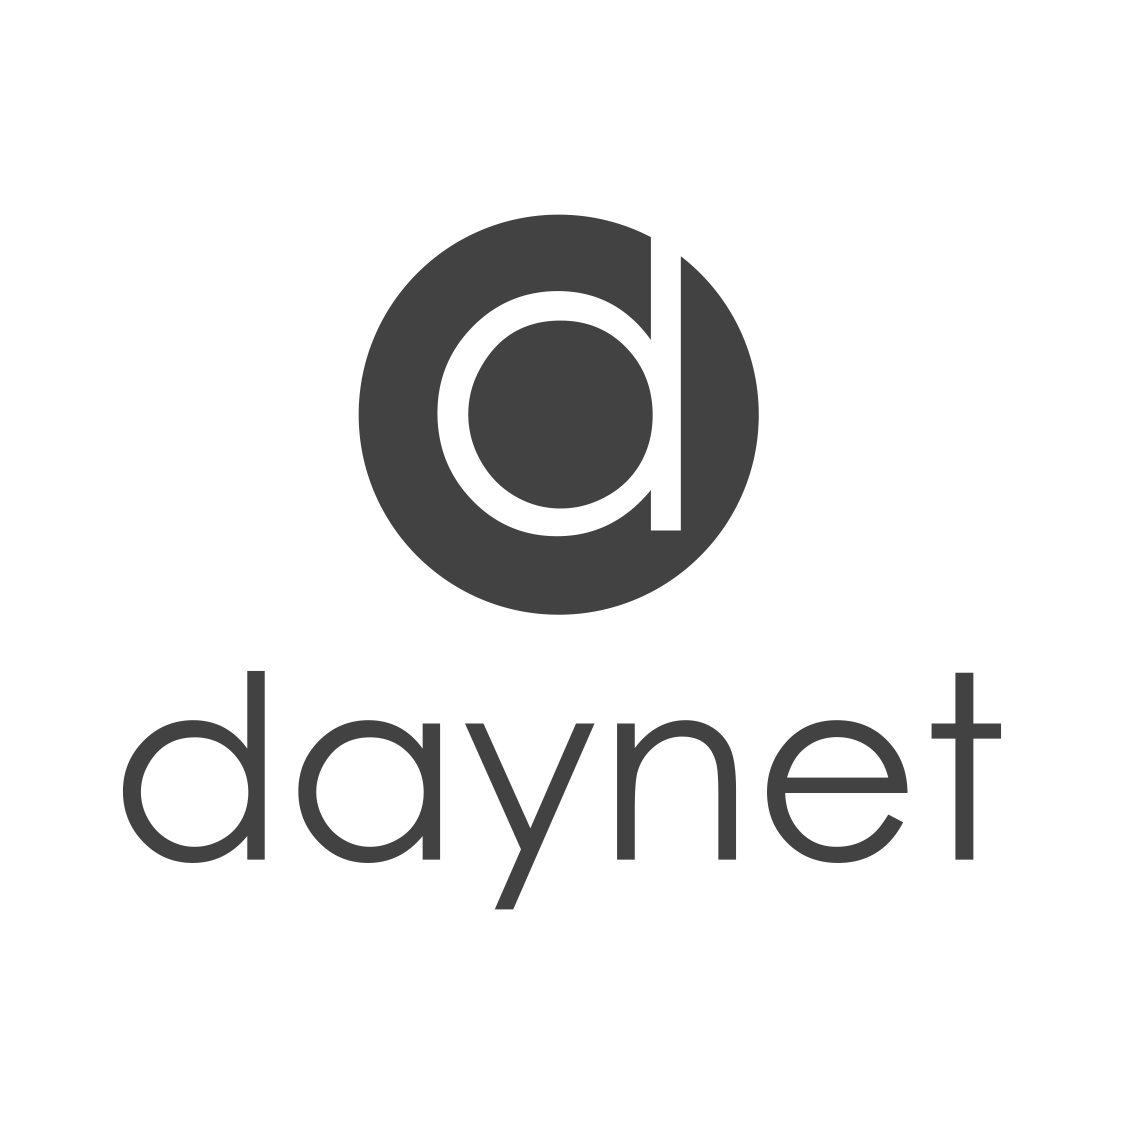 Daynet